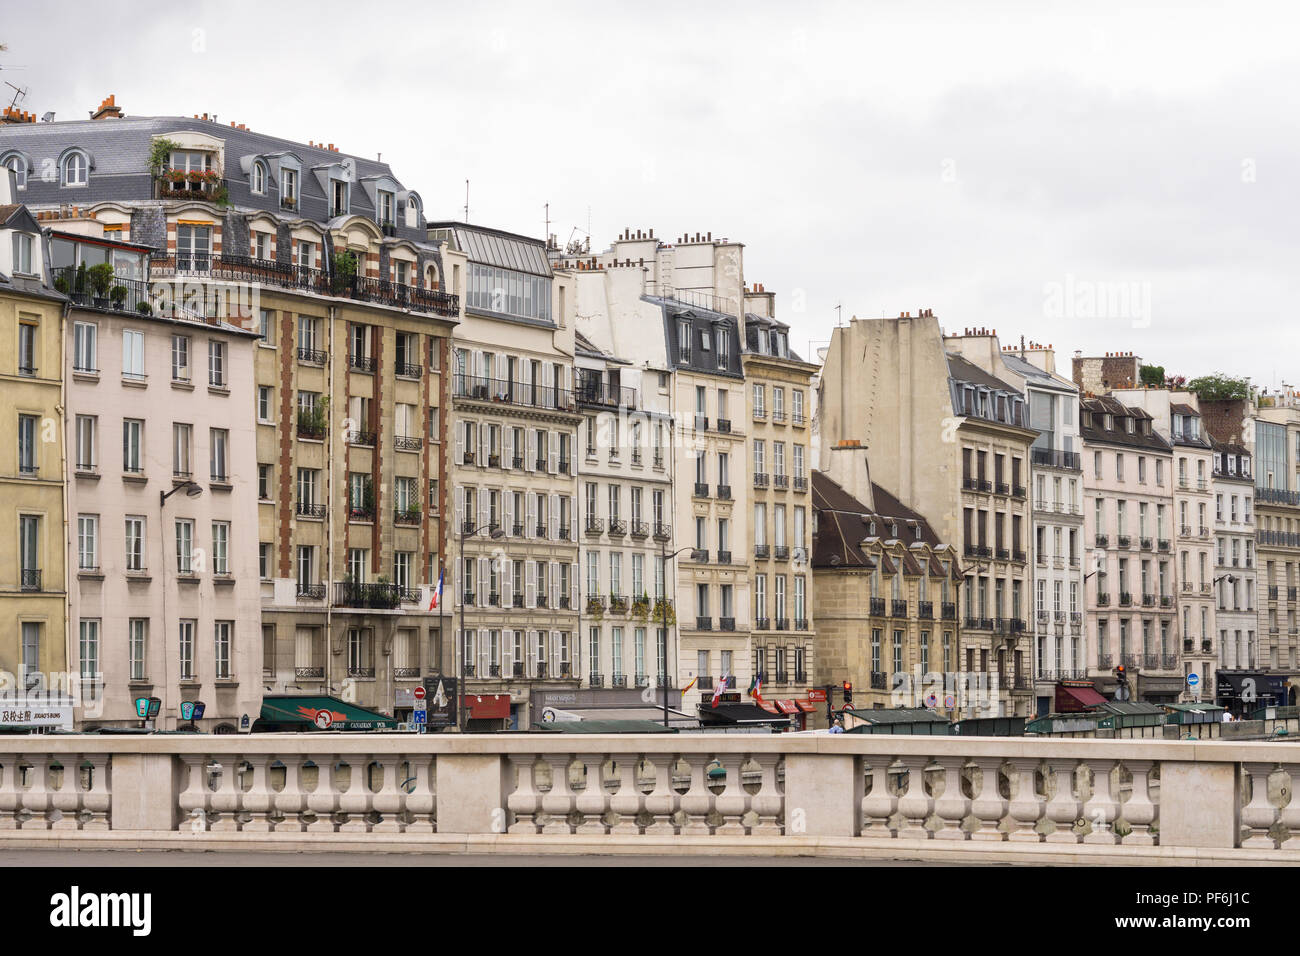 Paris cityscape - Buildings on Quai des Grands Augustins as seen from the Saint Michel bridge in Paris, France, Europe. Stock Photo